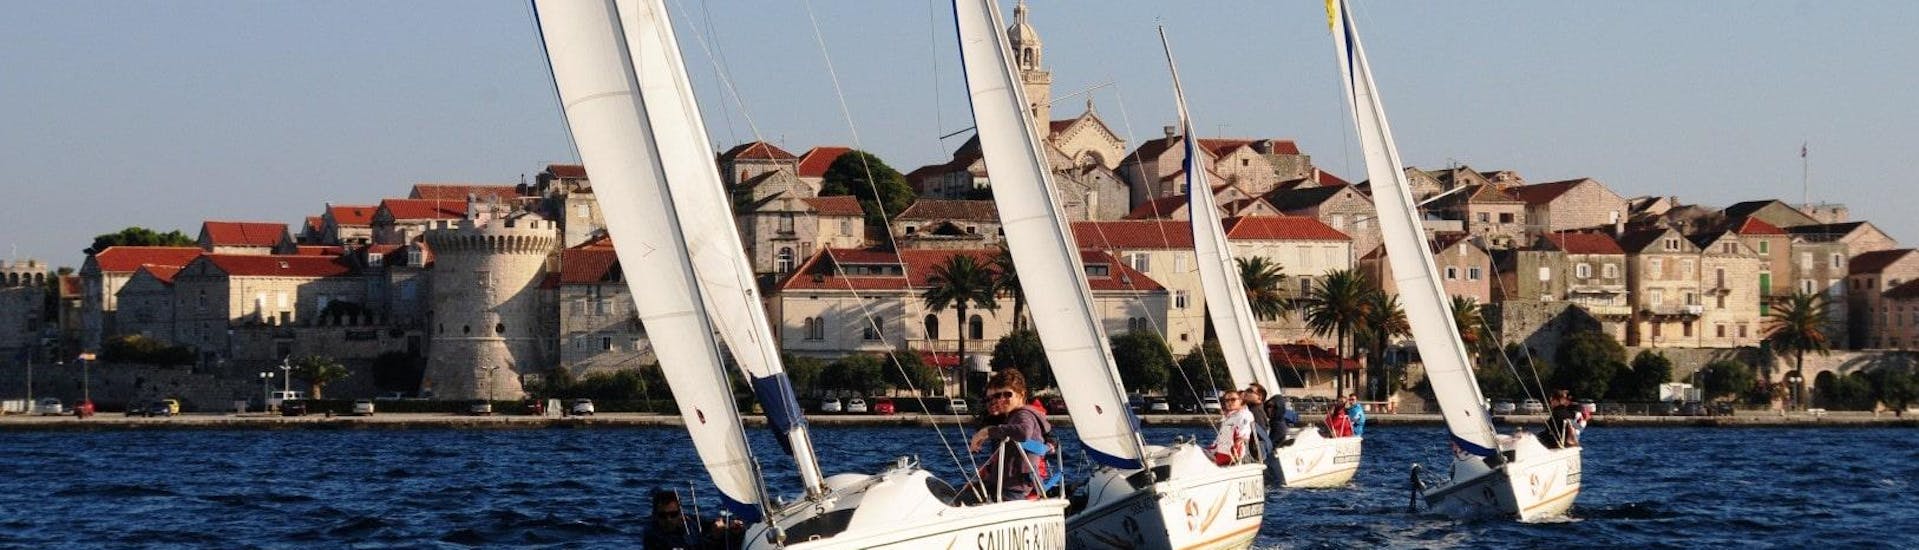 Gita in barca a vela da Korčula (town) a Pelješac Channel con bagno in mare e osservazione della fauna selvatica.